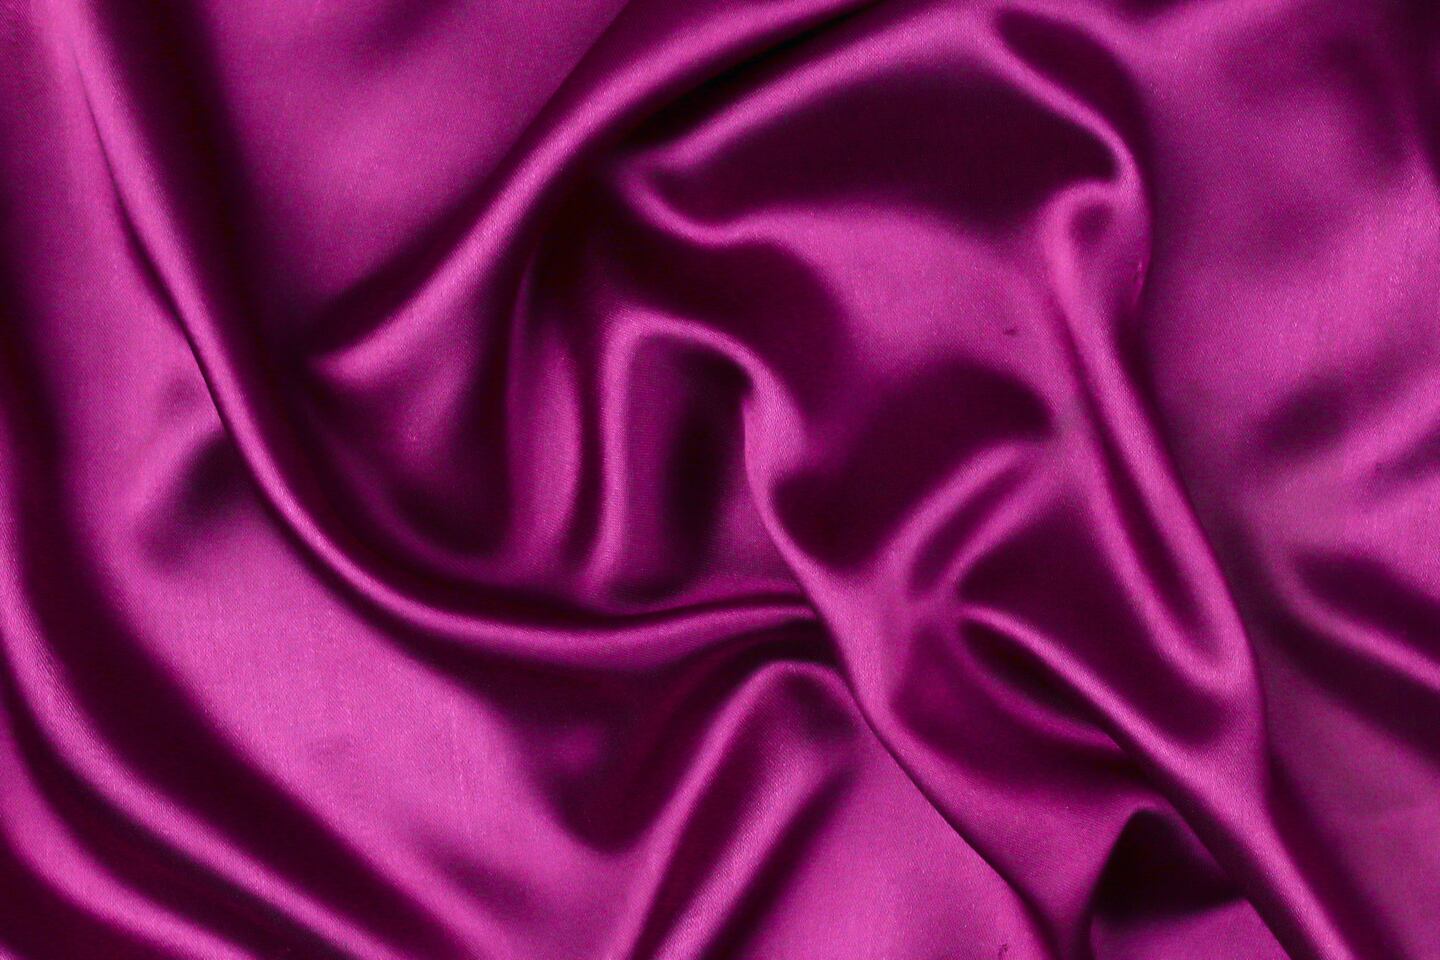 Silk. Tamanna Rumee via Unsplash.